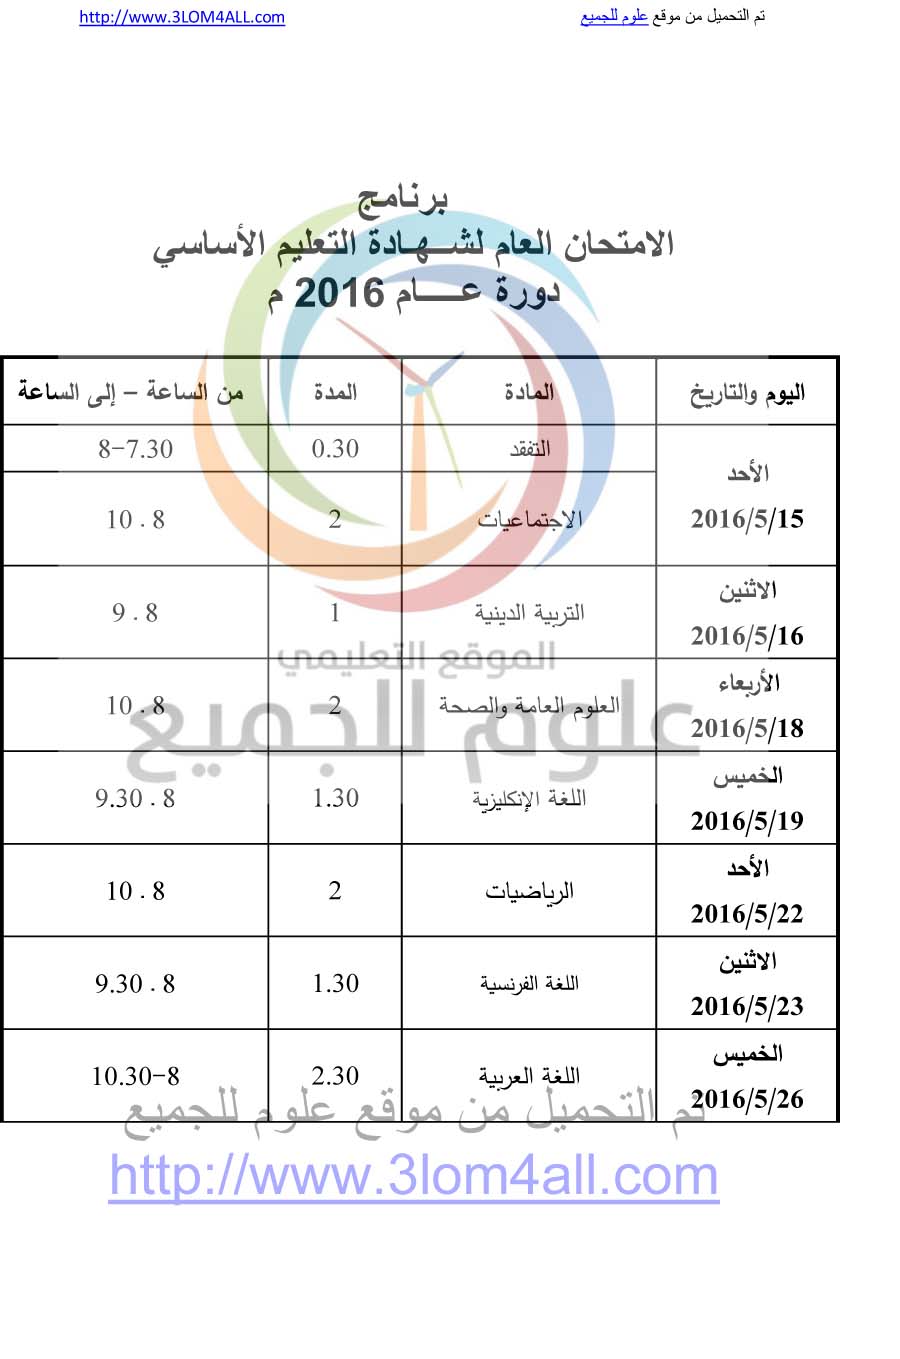 برنامج فحص التاسع 2017 سوريا - البرنامج الامتحاني لشهادتي التعليم الأساسي  والإعدادية الشرعية لعام 2017